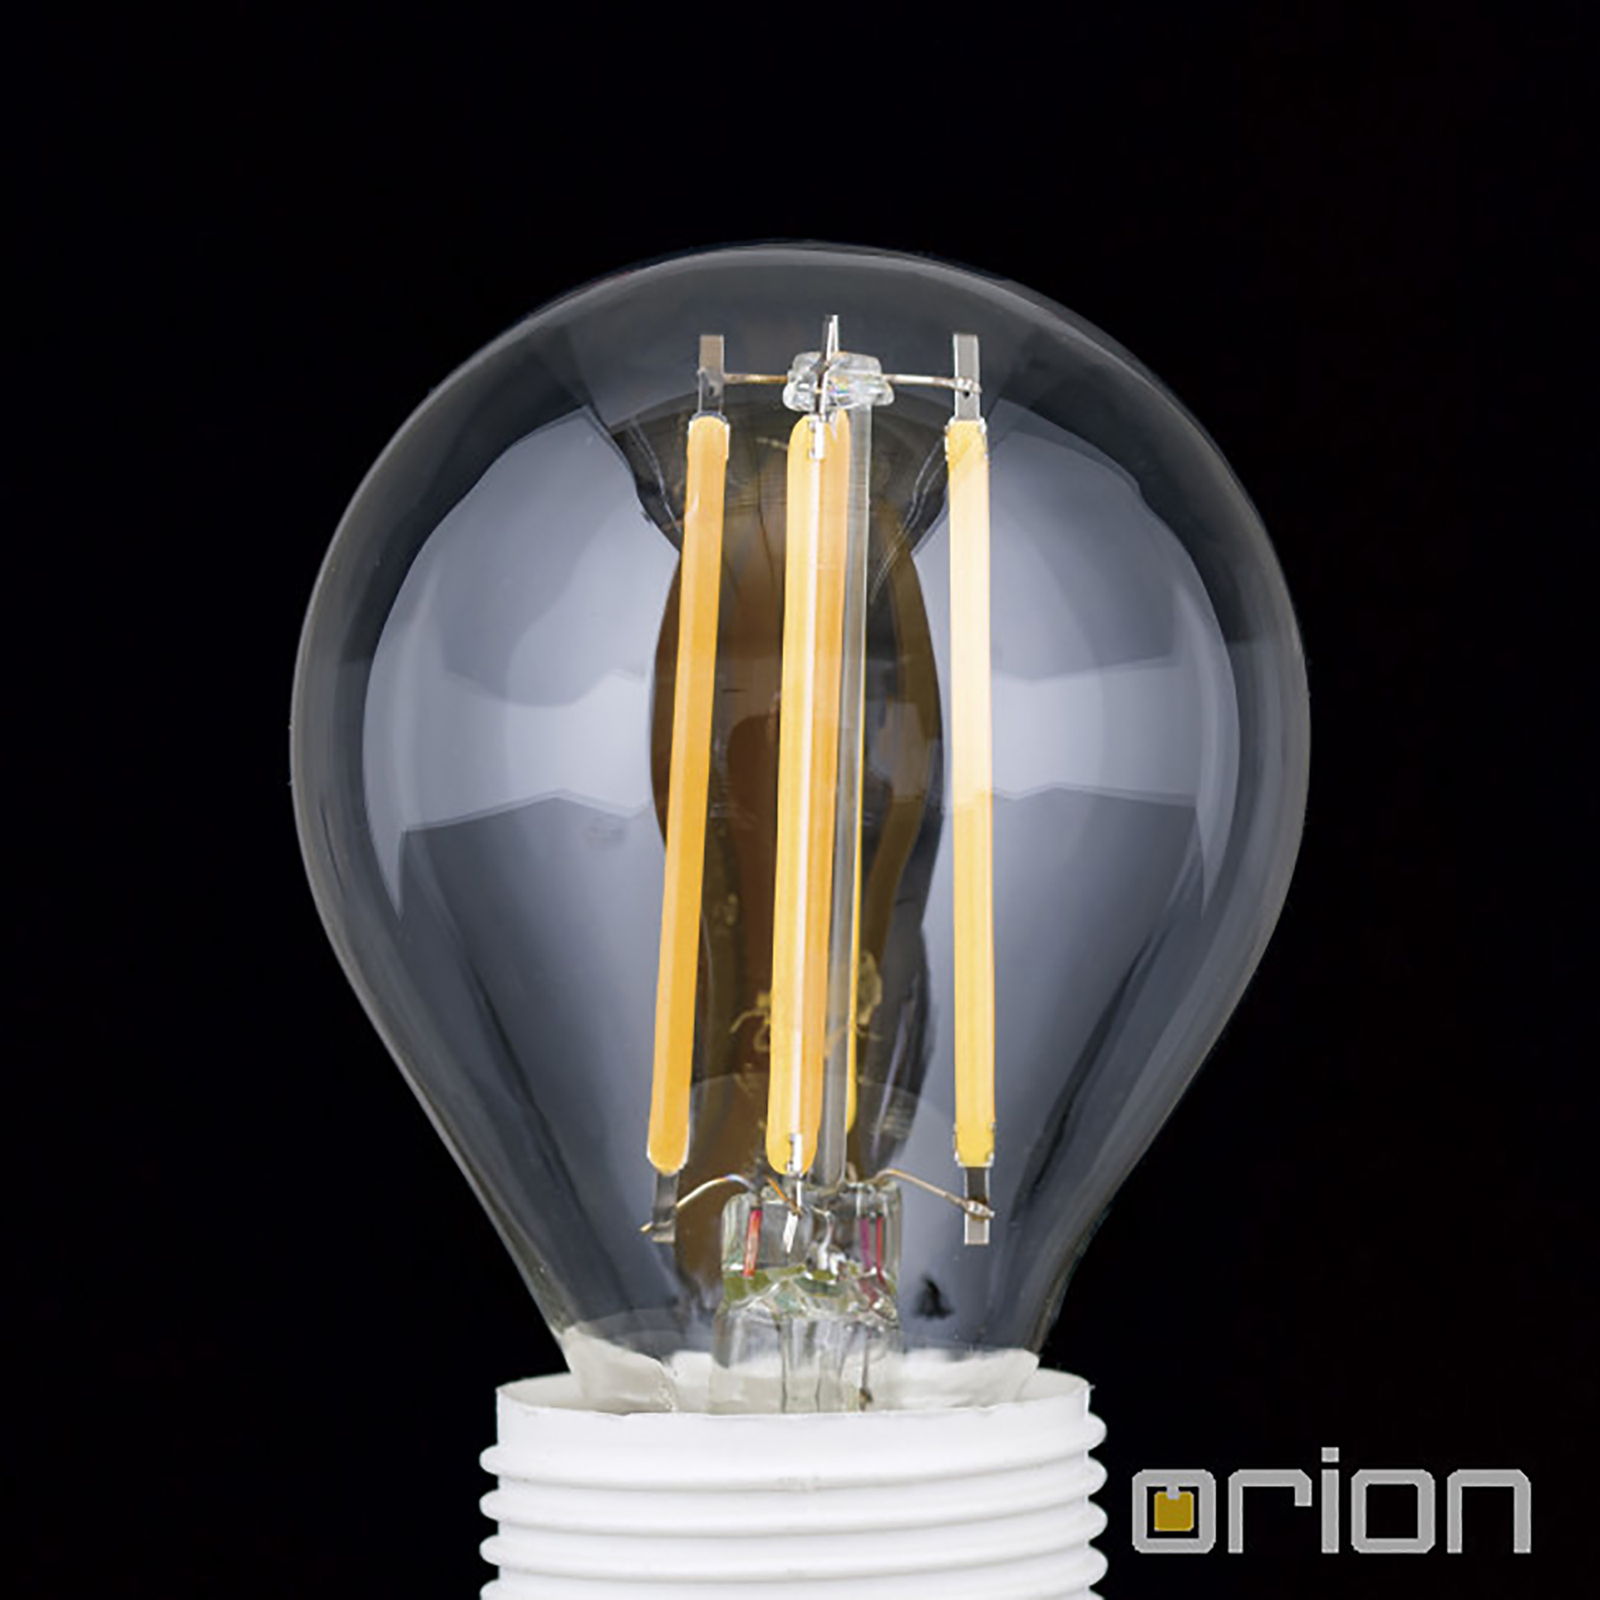 LED-dråpepære E14 5W filament 827 dimbar